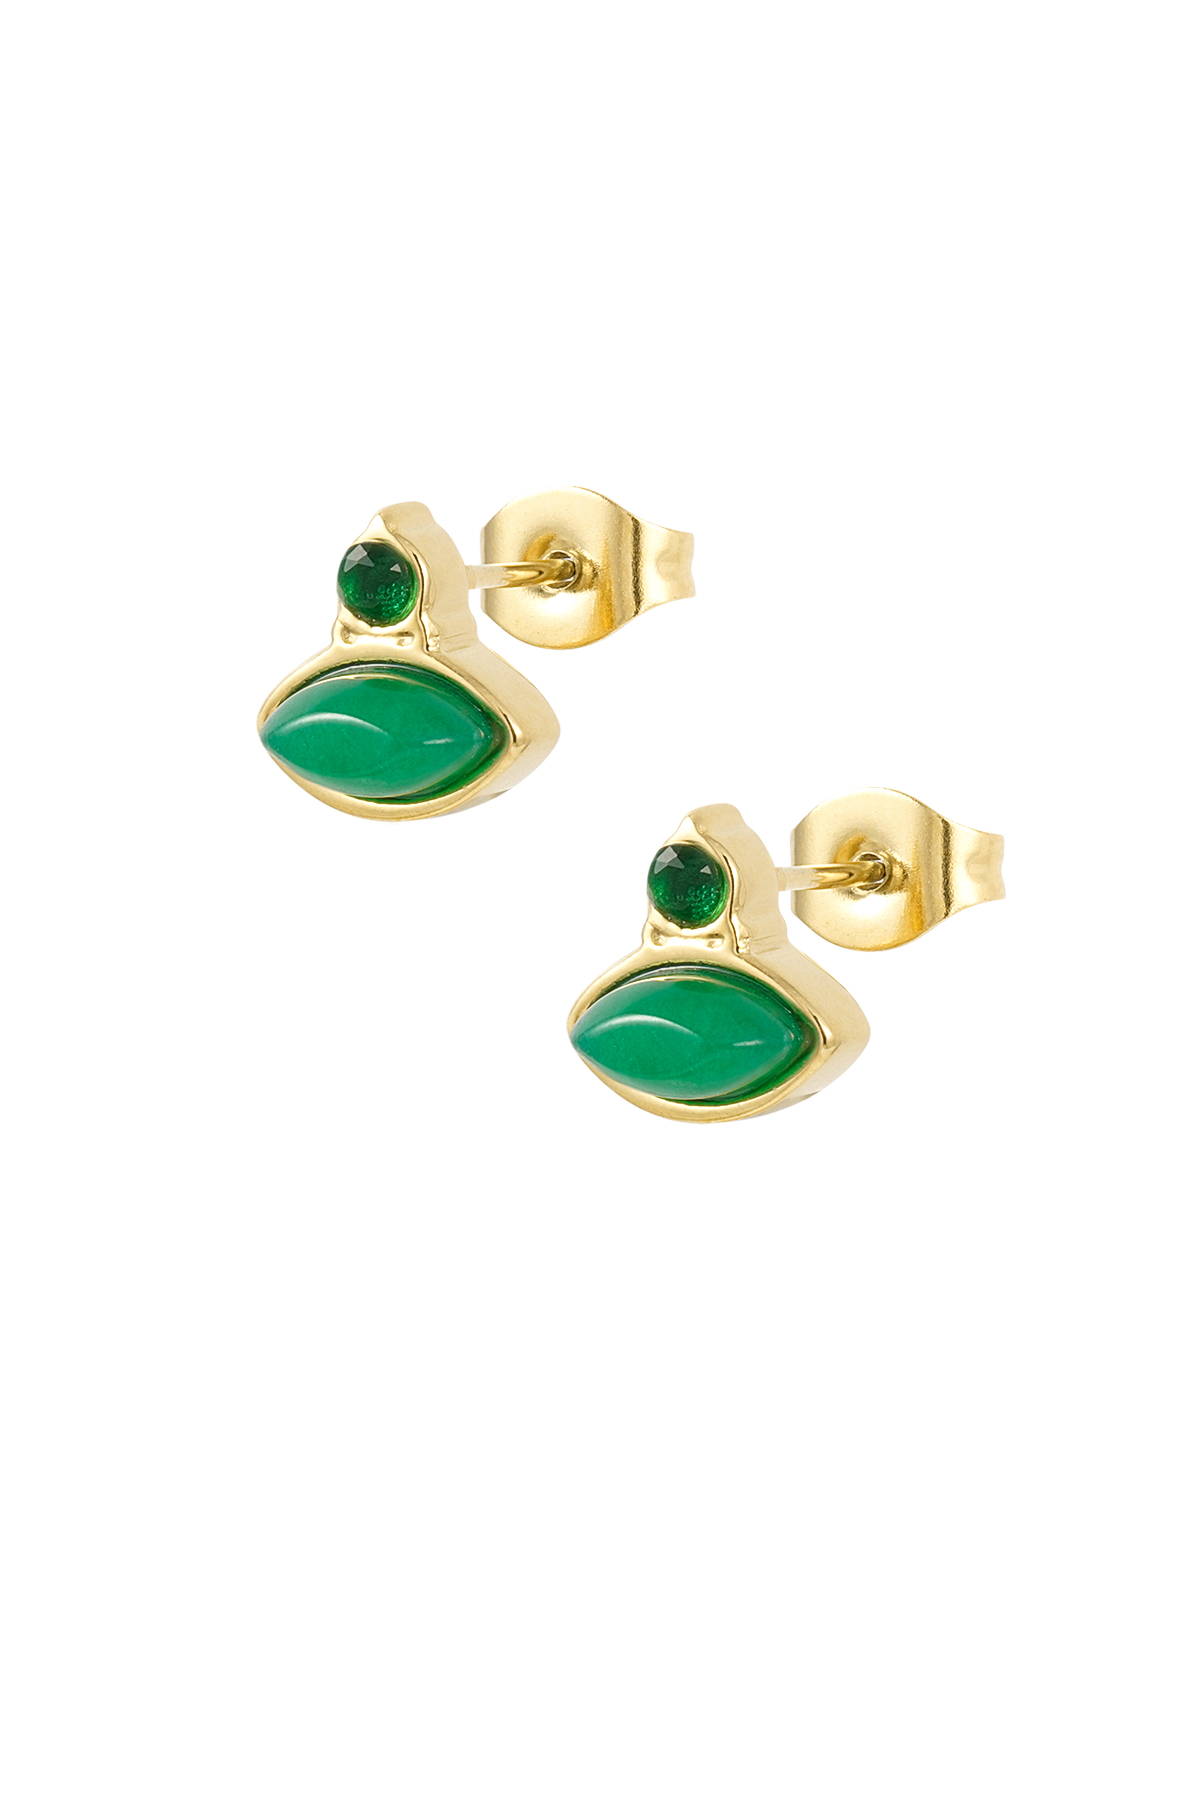 Vintage Ohrringe mit Strasssteinen - smaragdgrün